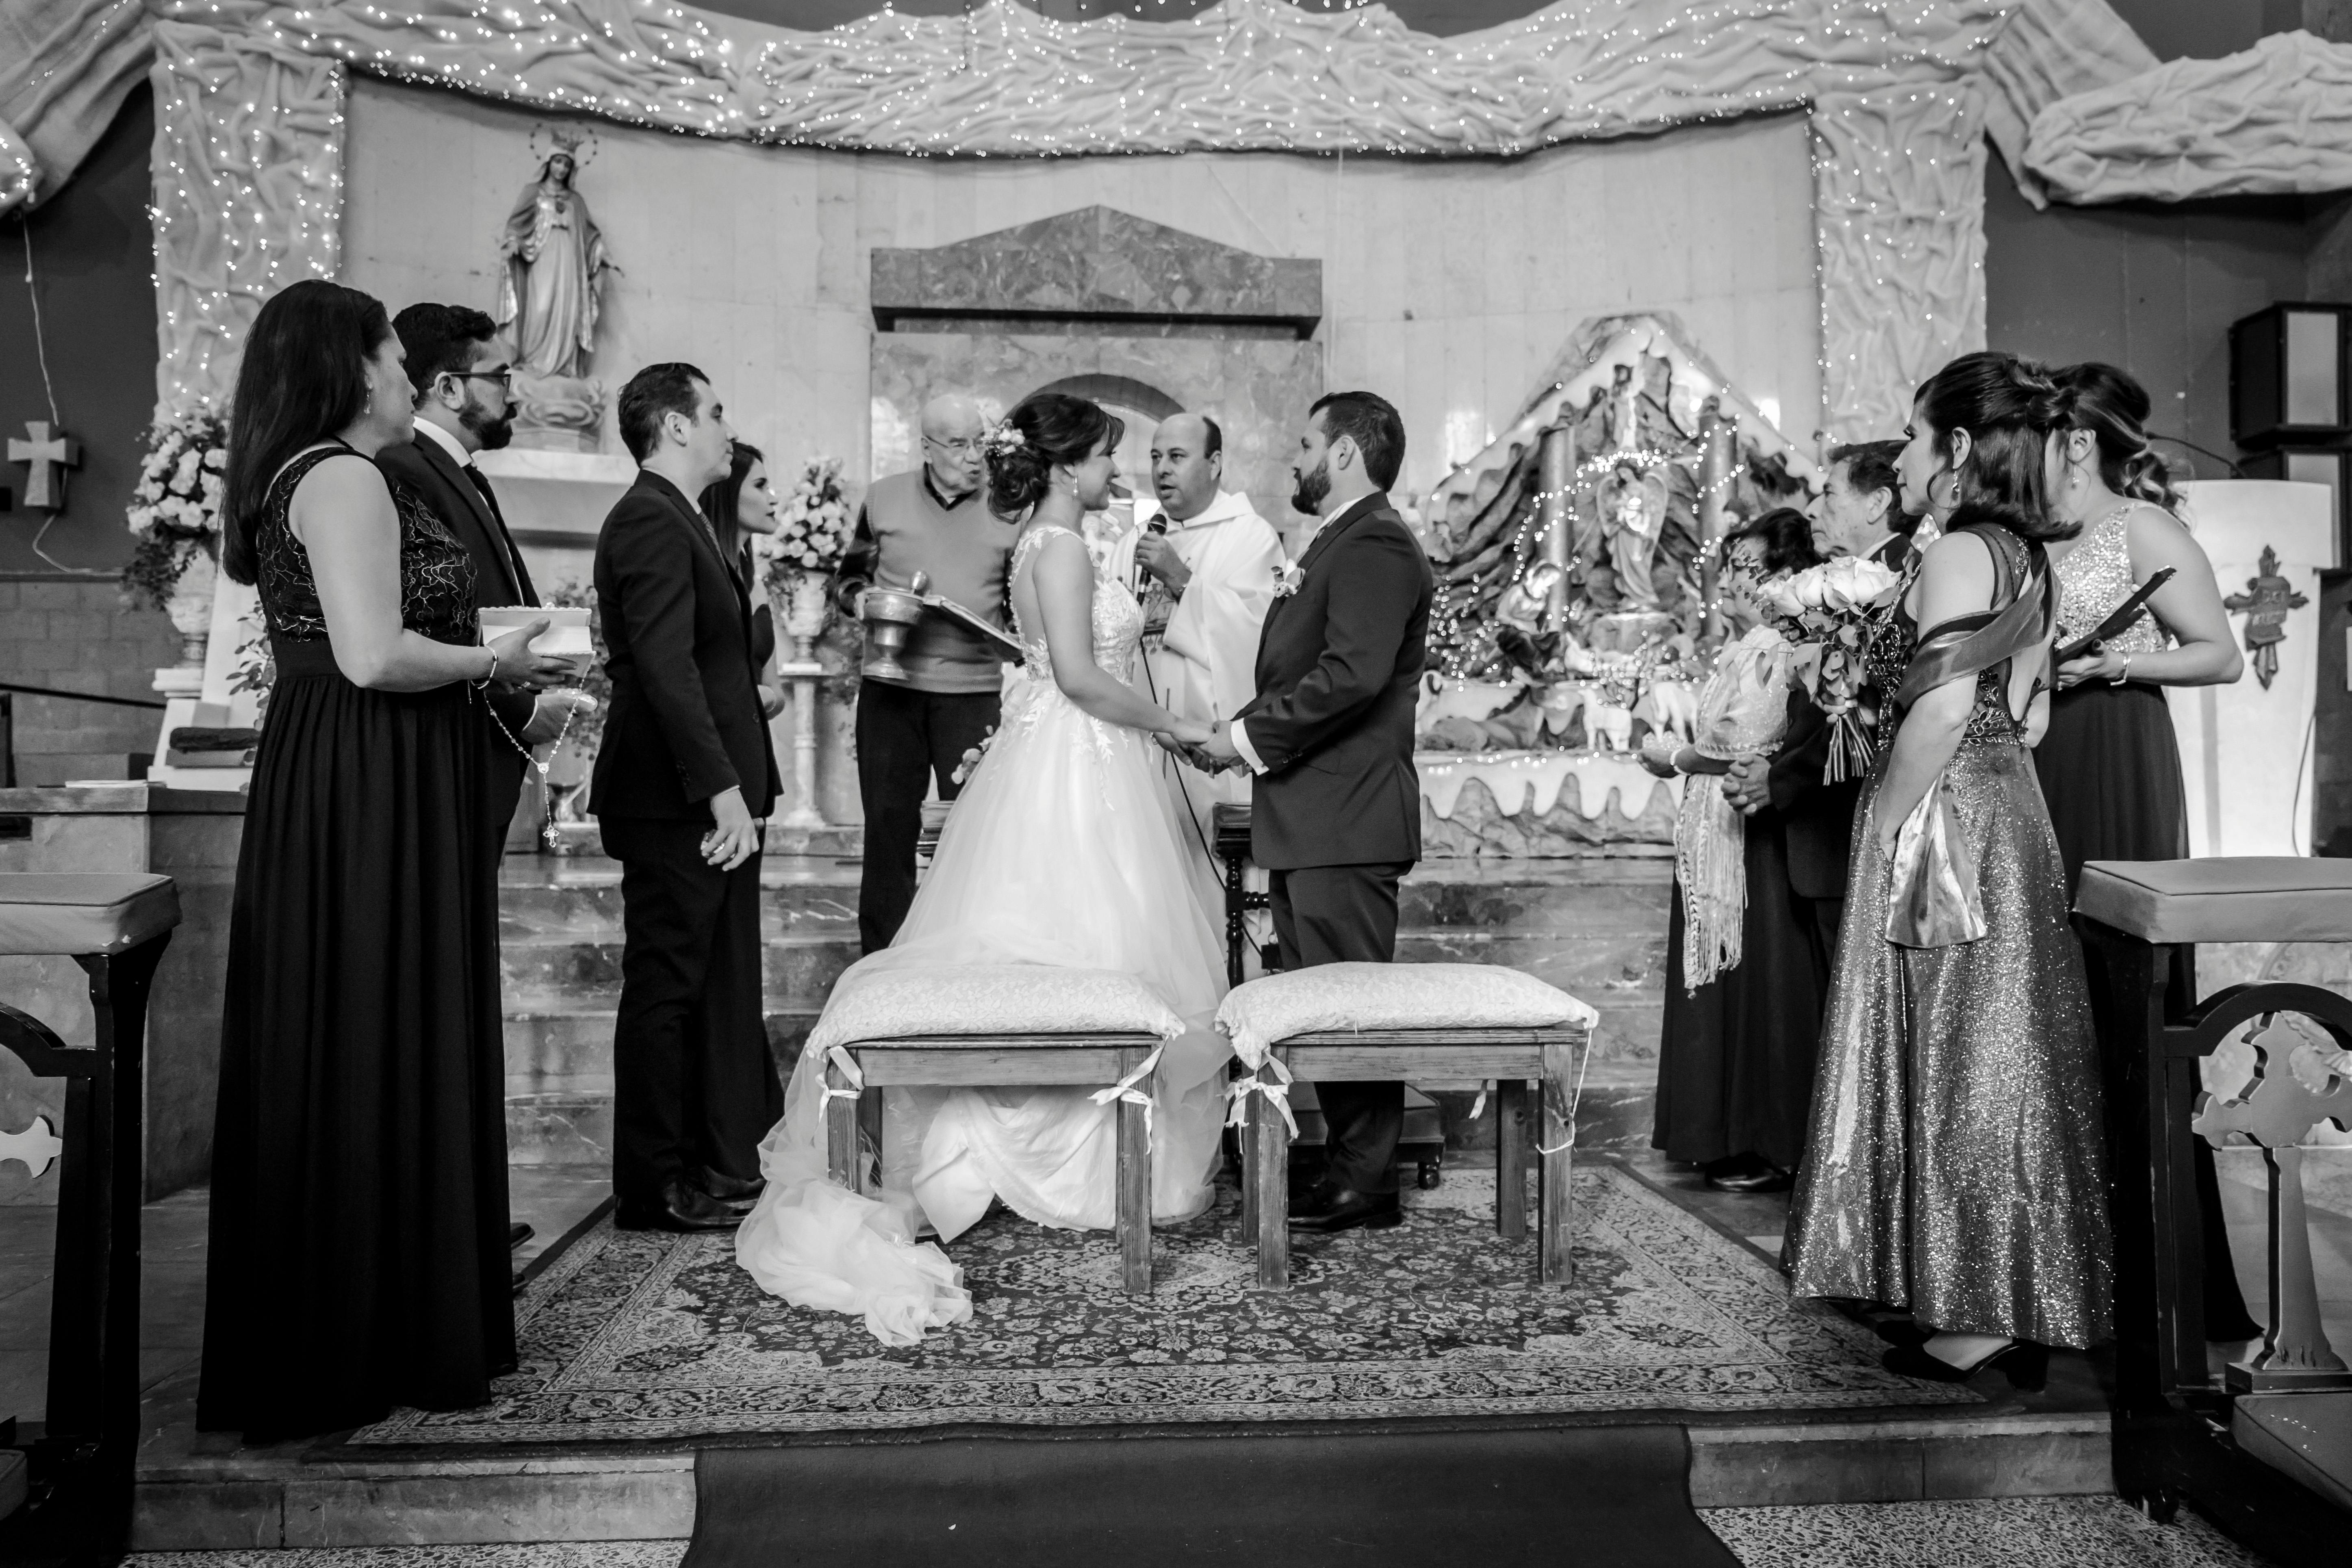 Braut und Bräutigam vor dem Altar | Quelle: Pexels